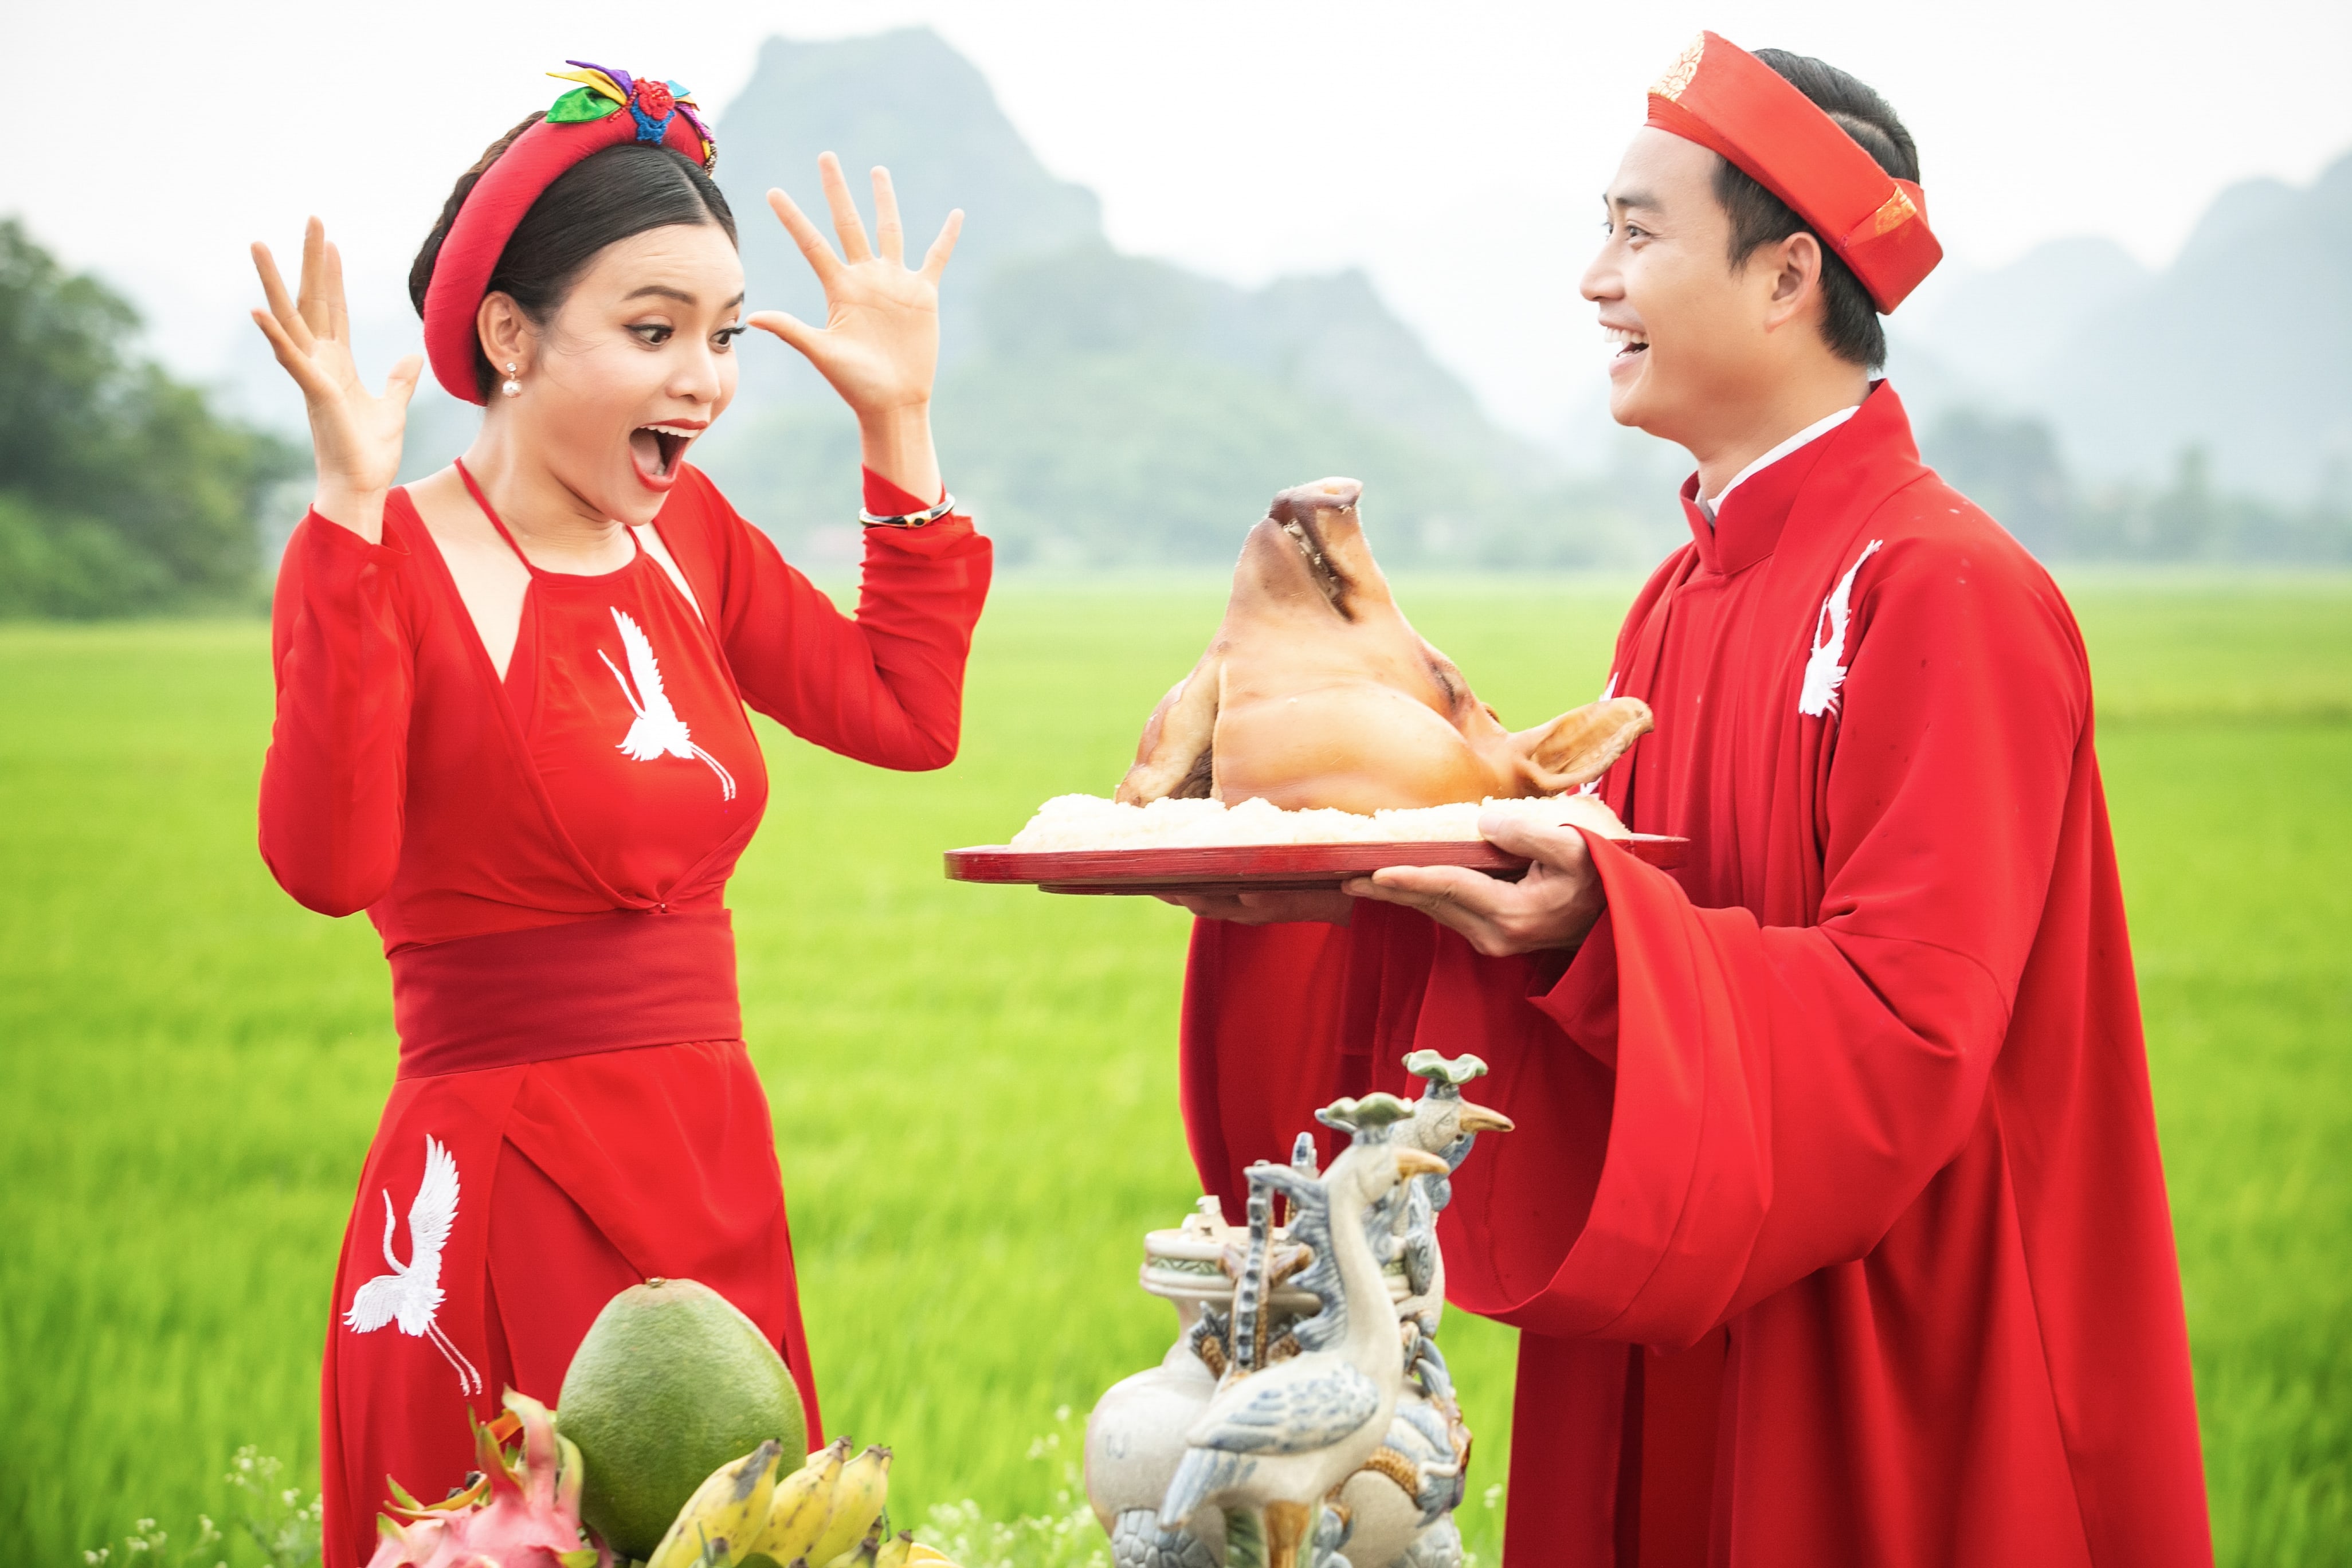 Sau những hình ảnh lãng mạn, cặp đôi khiến đoàn phim cười ngất khi Tiến Lộc “dâng”… thủ lợn đòi… cưới Phạm Phương Thảo. 